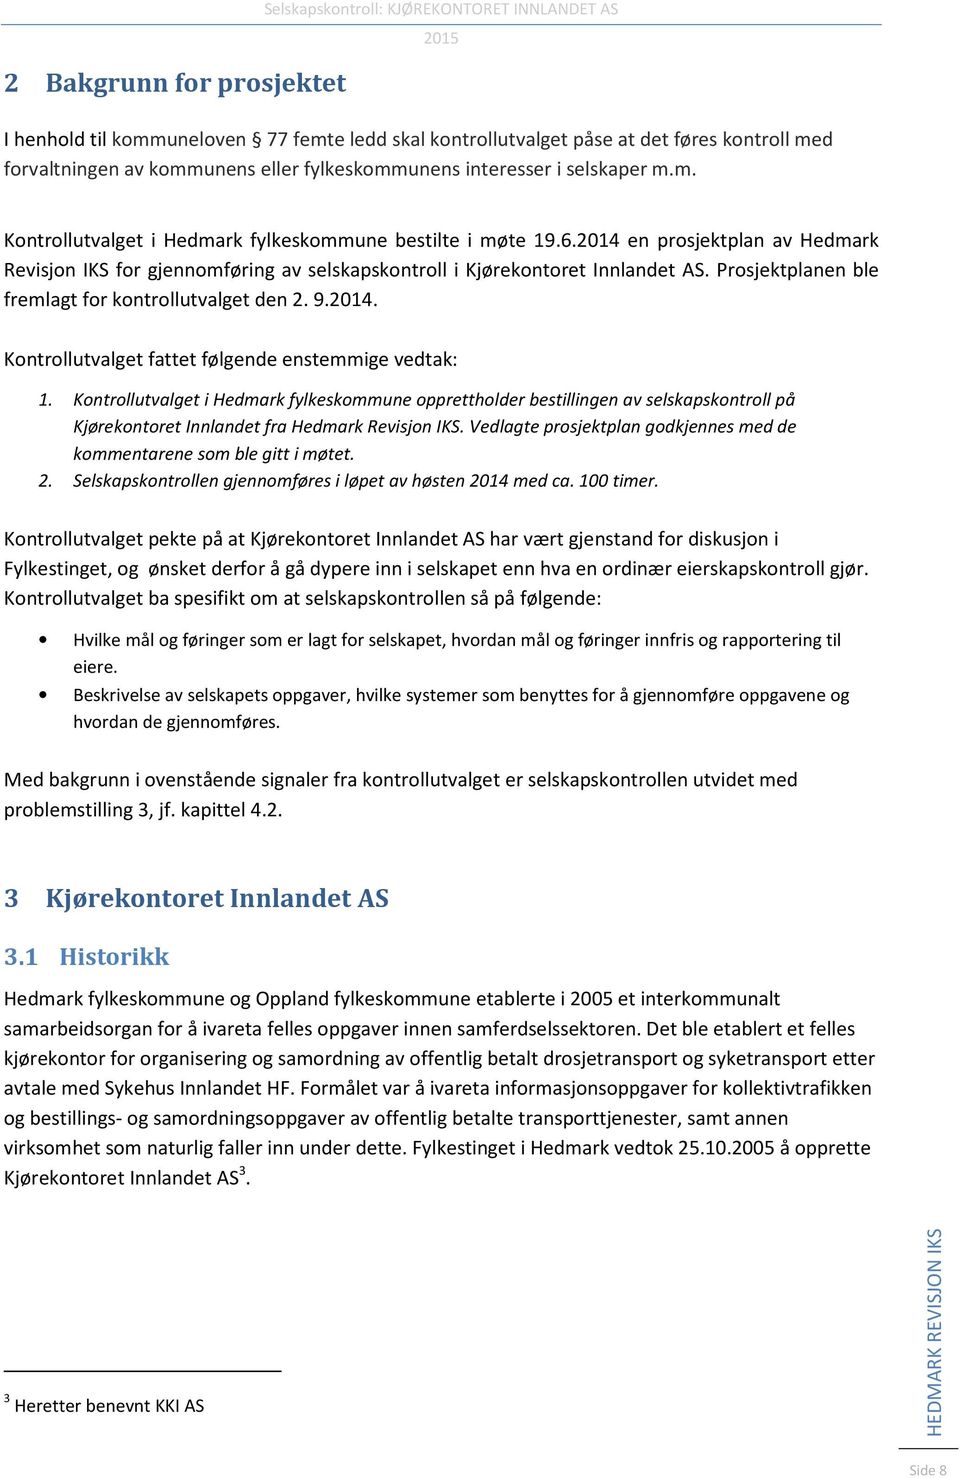 2014 en prosjektplan av Hedmark Revisjon IKS for gjennomføring av selskapskontroll i Kjørekontoret Innlandet AS. Prosjektplanen ble fremlagt for kontrollutvalget den 2. 9.2014. Kontrollutvalget fattet følgende enstemmige vedtak: 1.